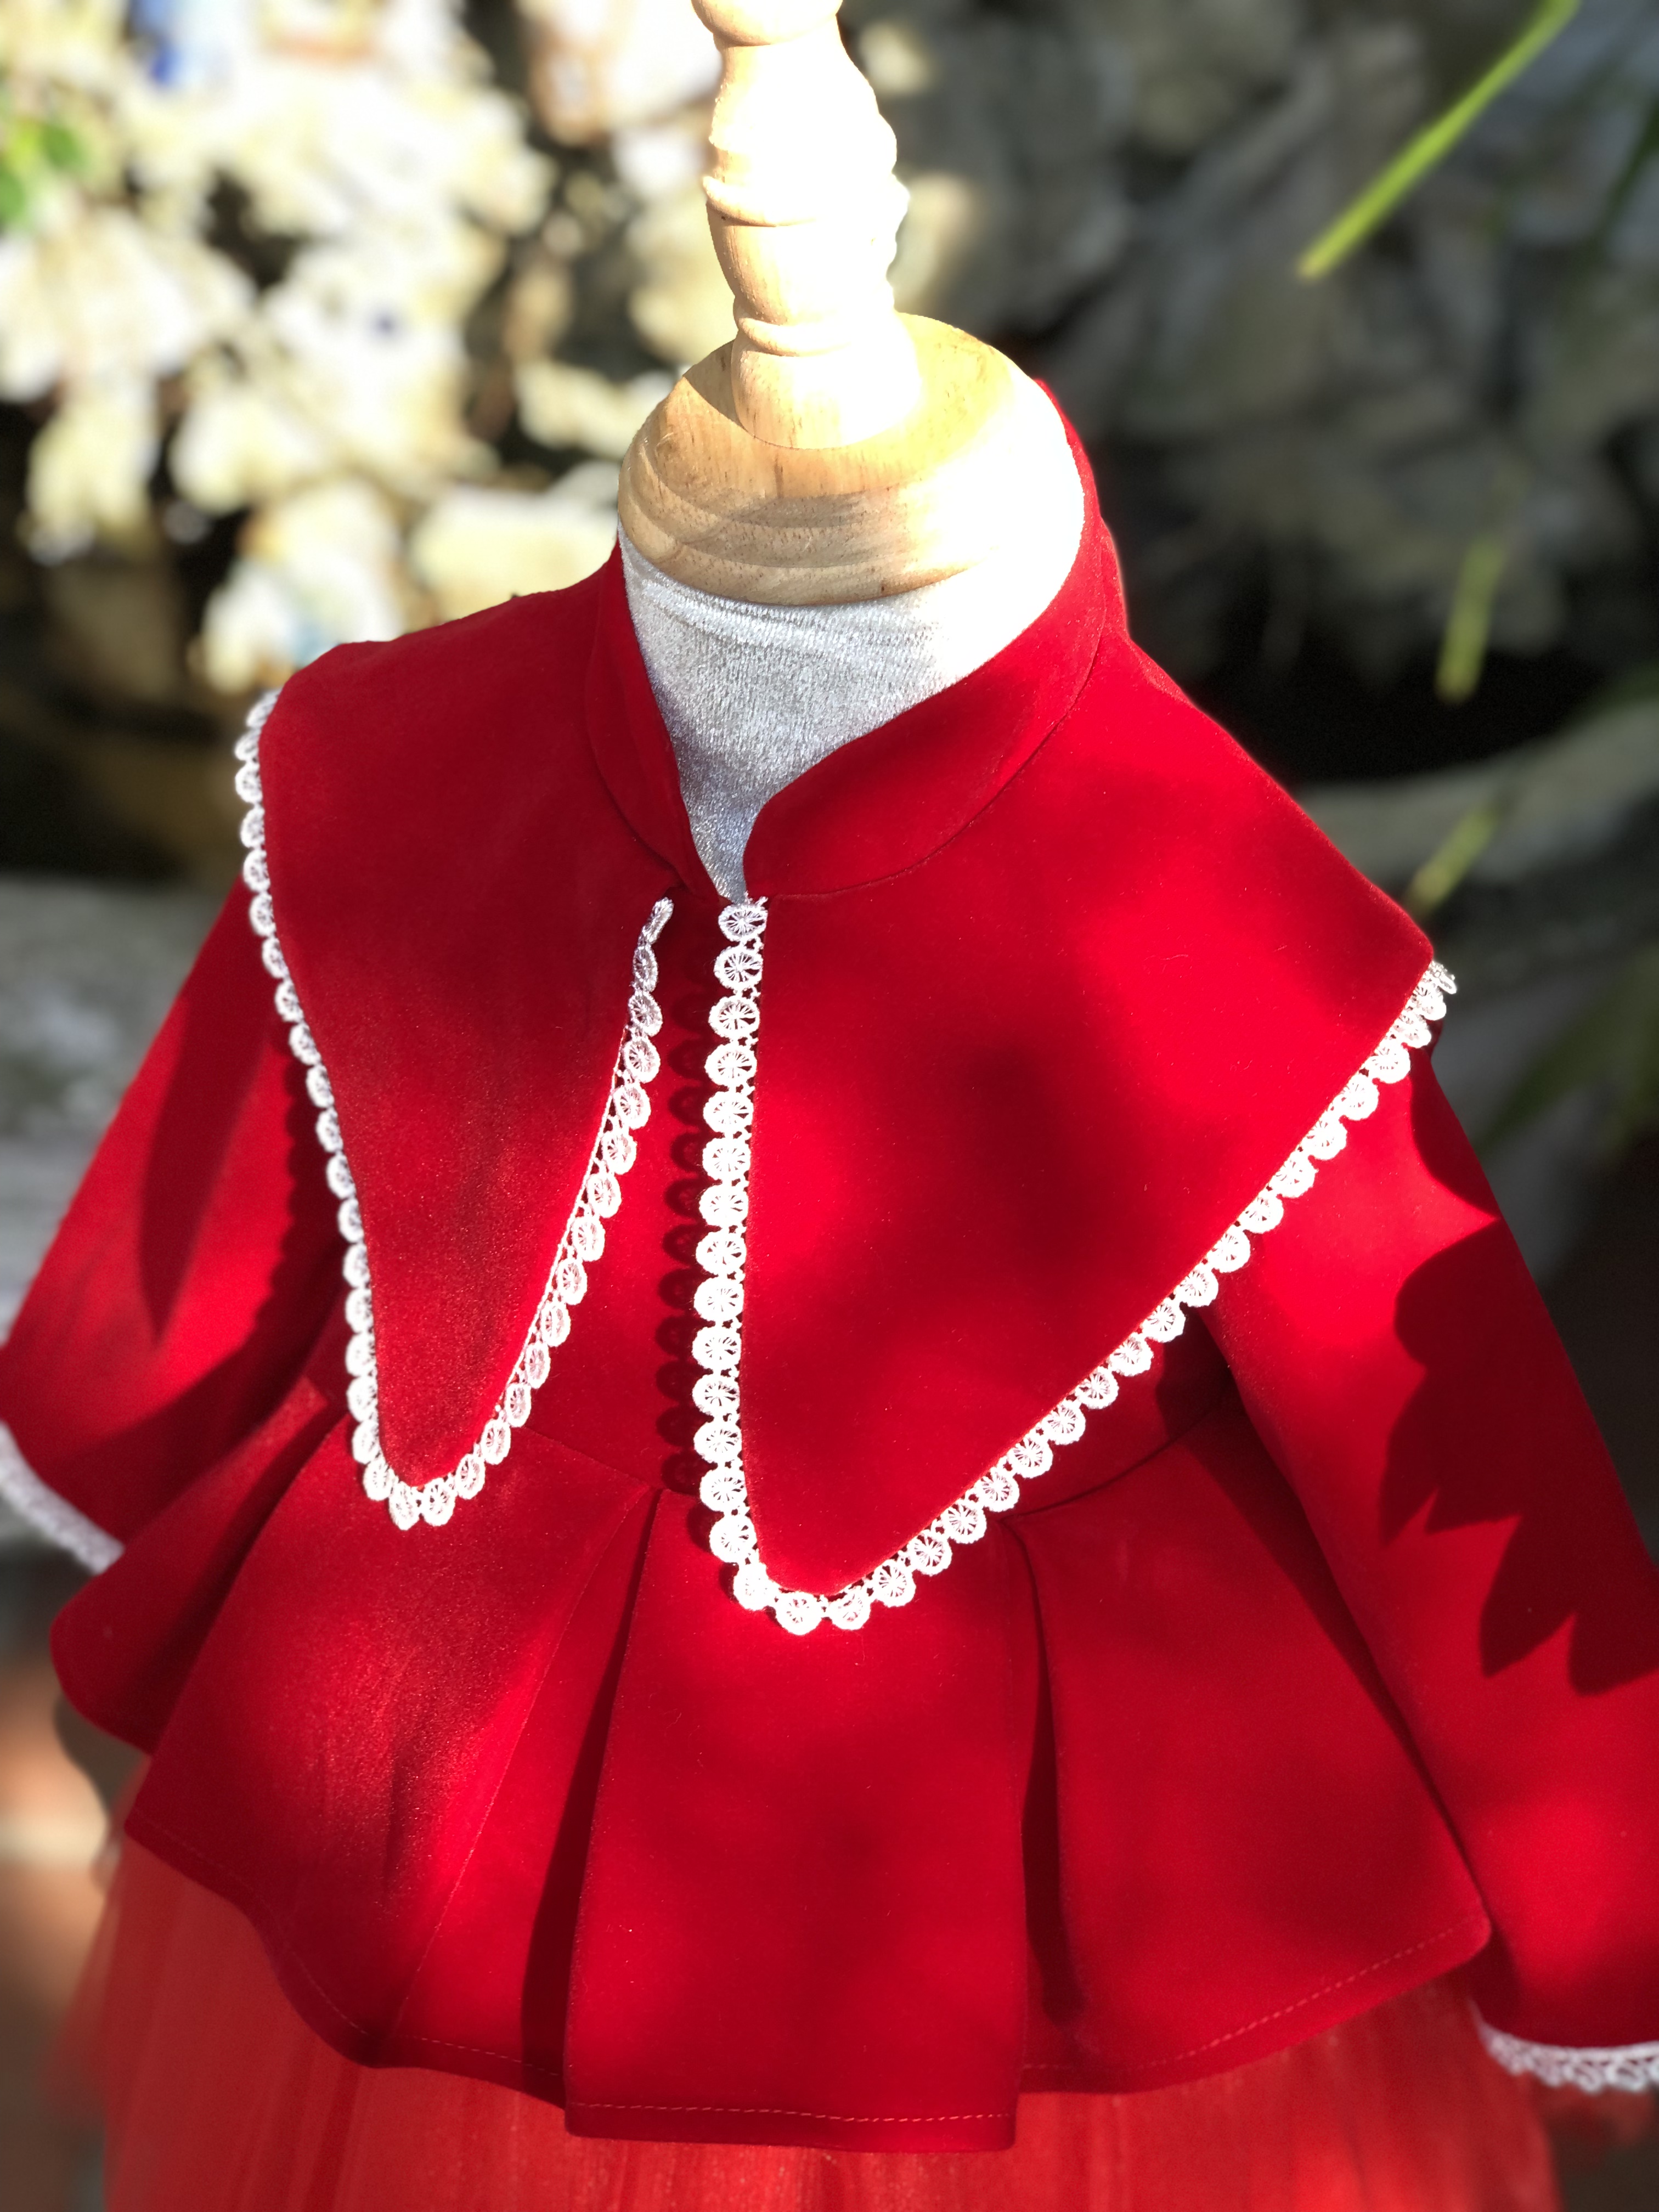 Váy nhung cho bé, váy bé gái thu đông BabyShine chất nhung đỏ cao cấp, phù hợp cho bé mặc vào mùa đông, các dịp lễ tết, sinh nhậl, size 8kg-26kg(1-8 tuổi)